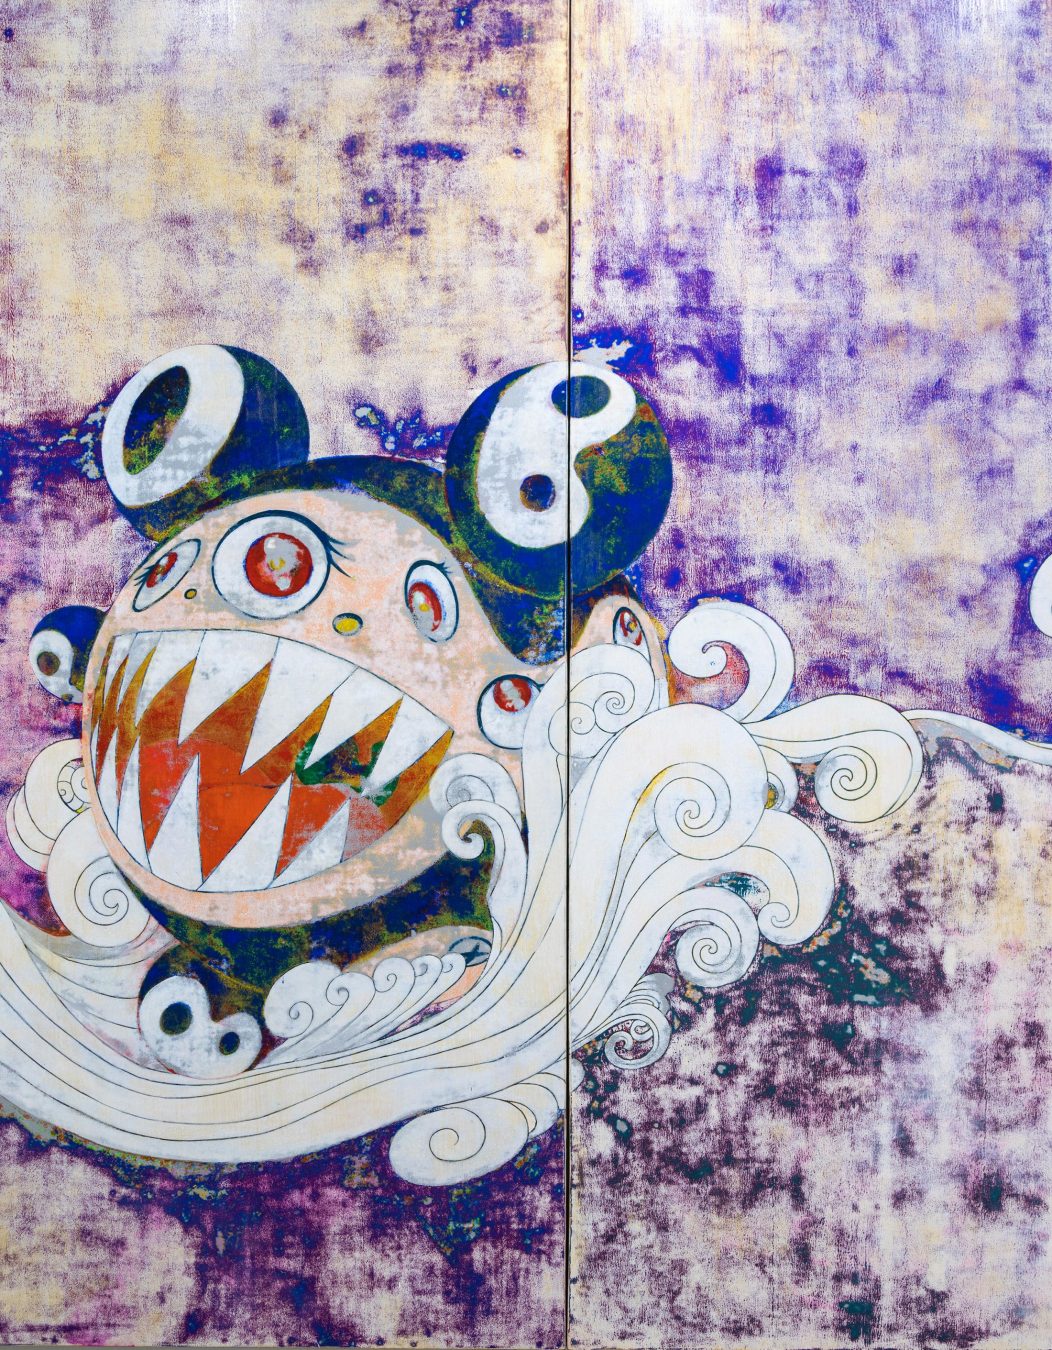 Is Artist Takashi Murakami Exalting or Critiquing Consumerism?